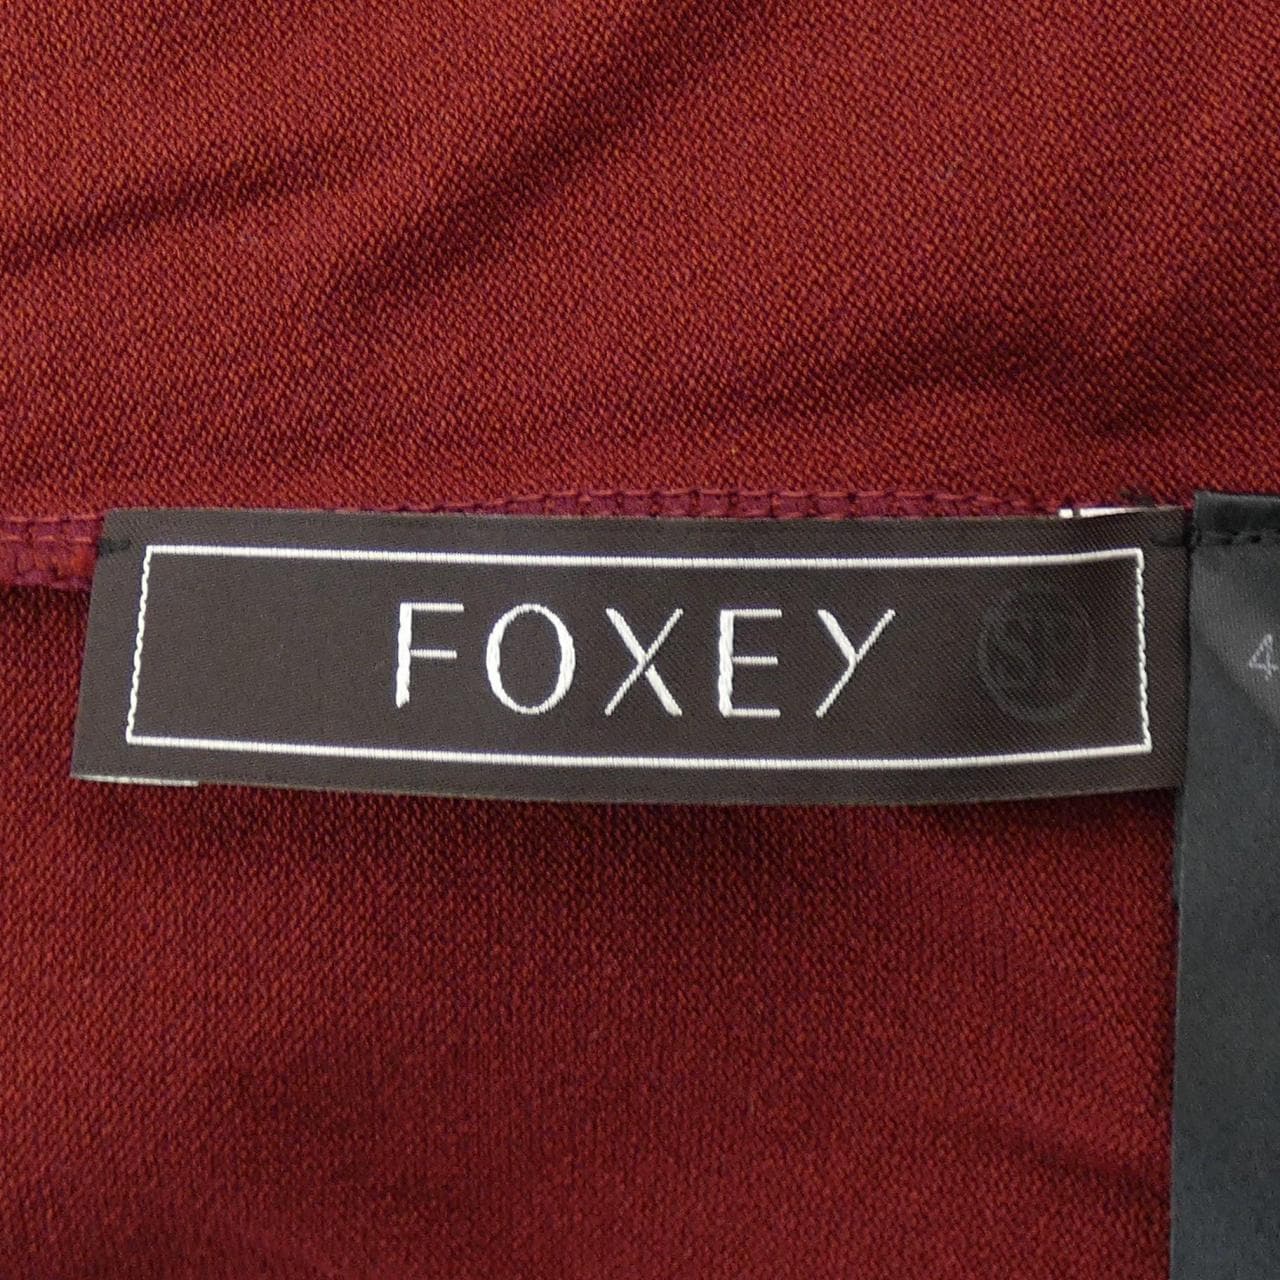 FOXEY上衣